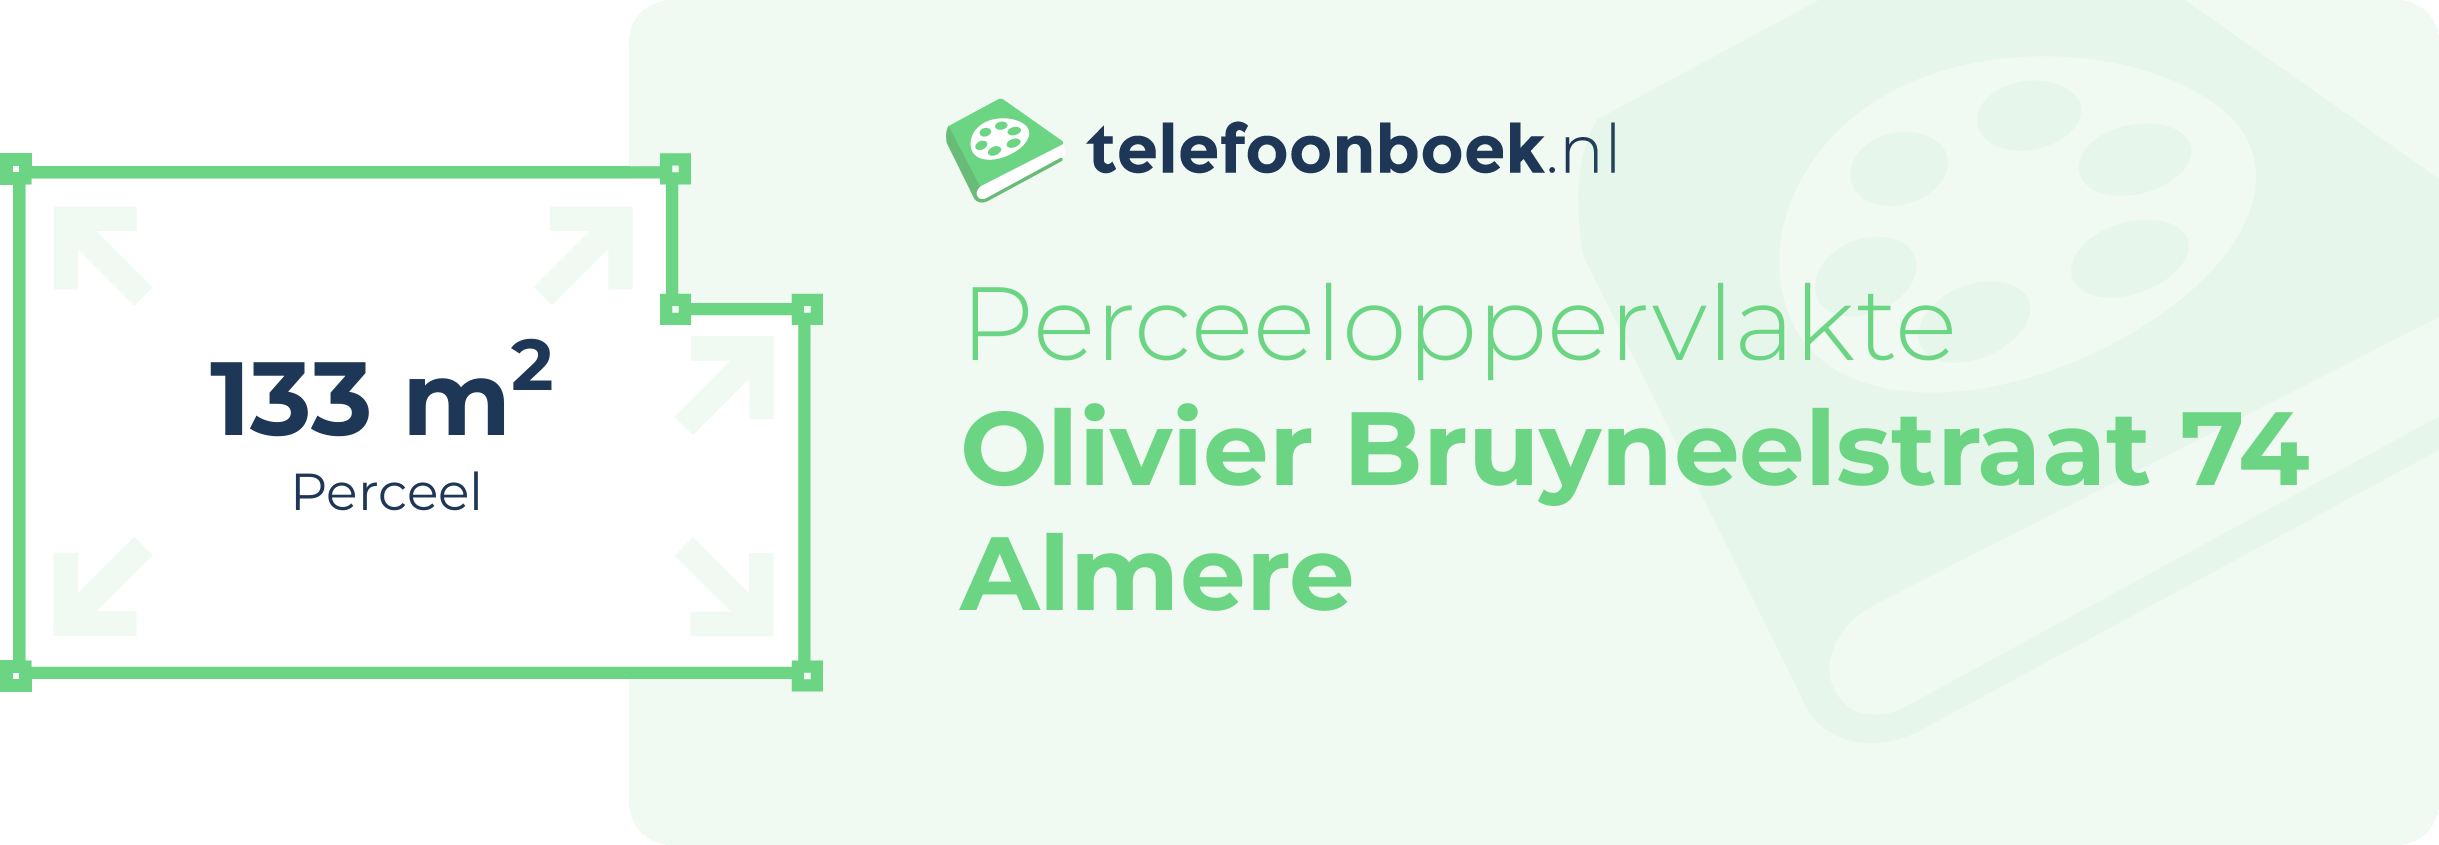 Perceeloppervlakte Olivier Bruyneelstraat 74 Almere